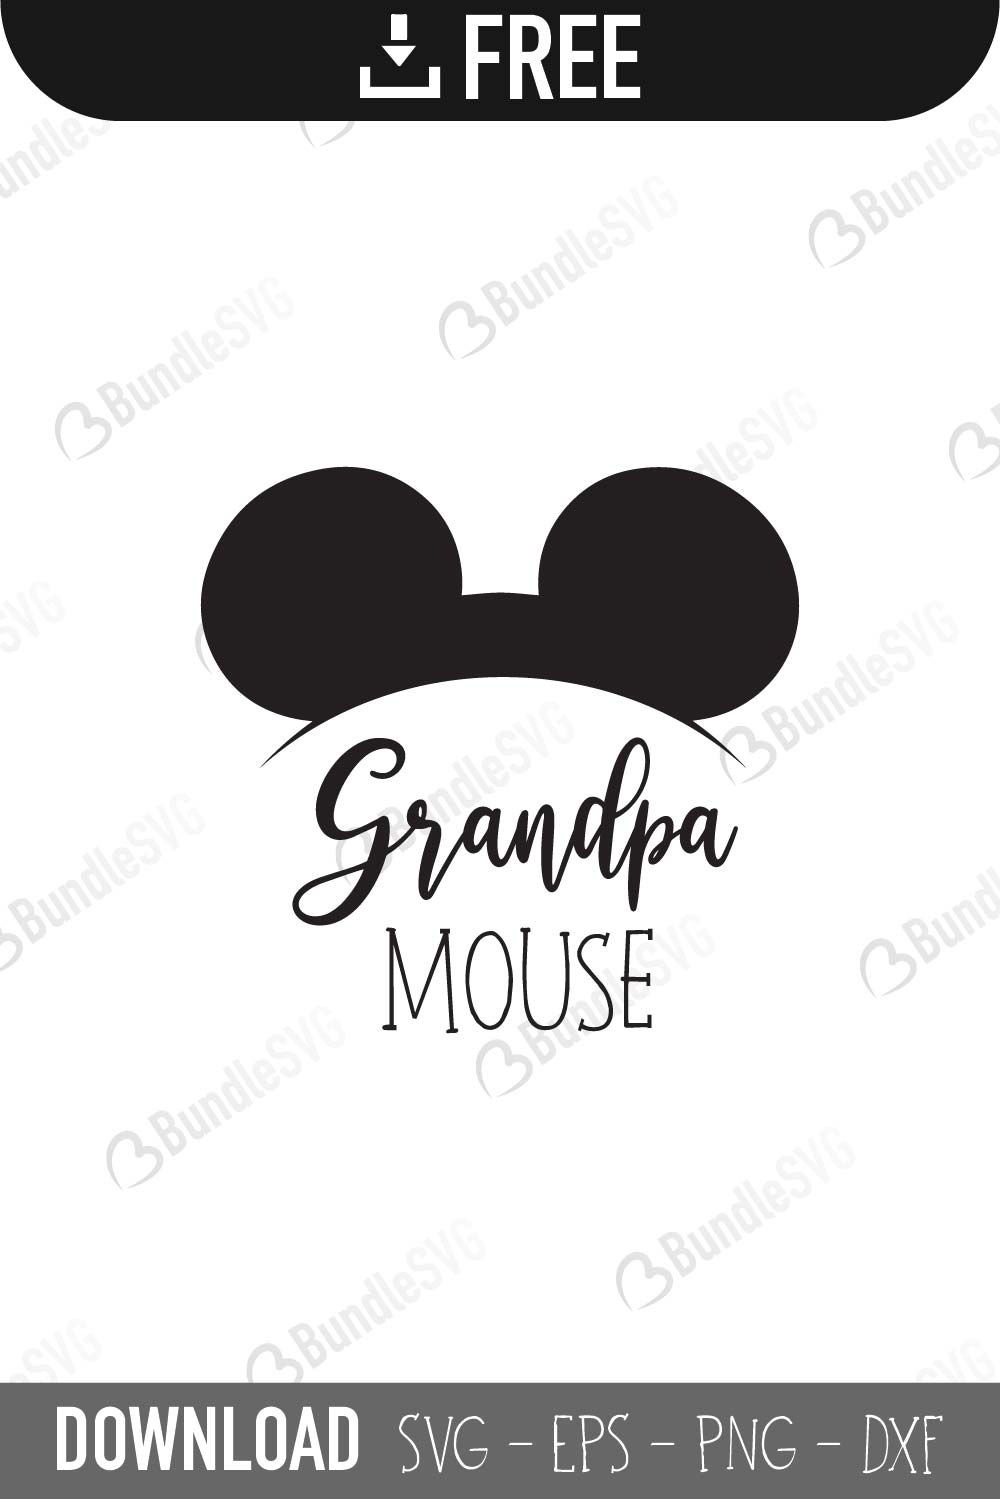 Download Micky Mouse SVG Free Download | BundleSVG.com